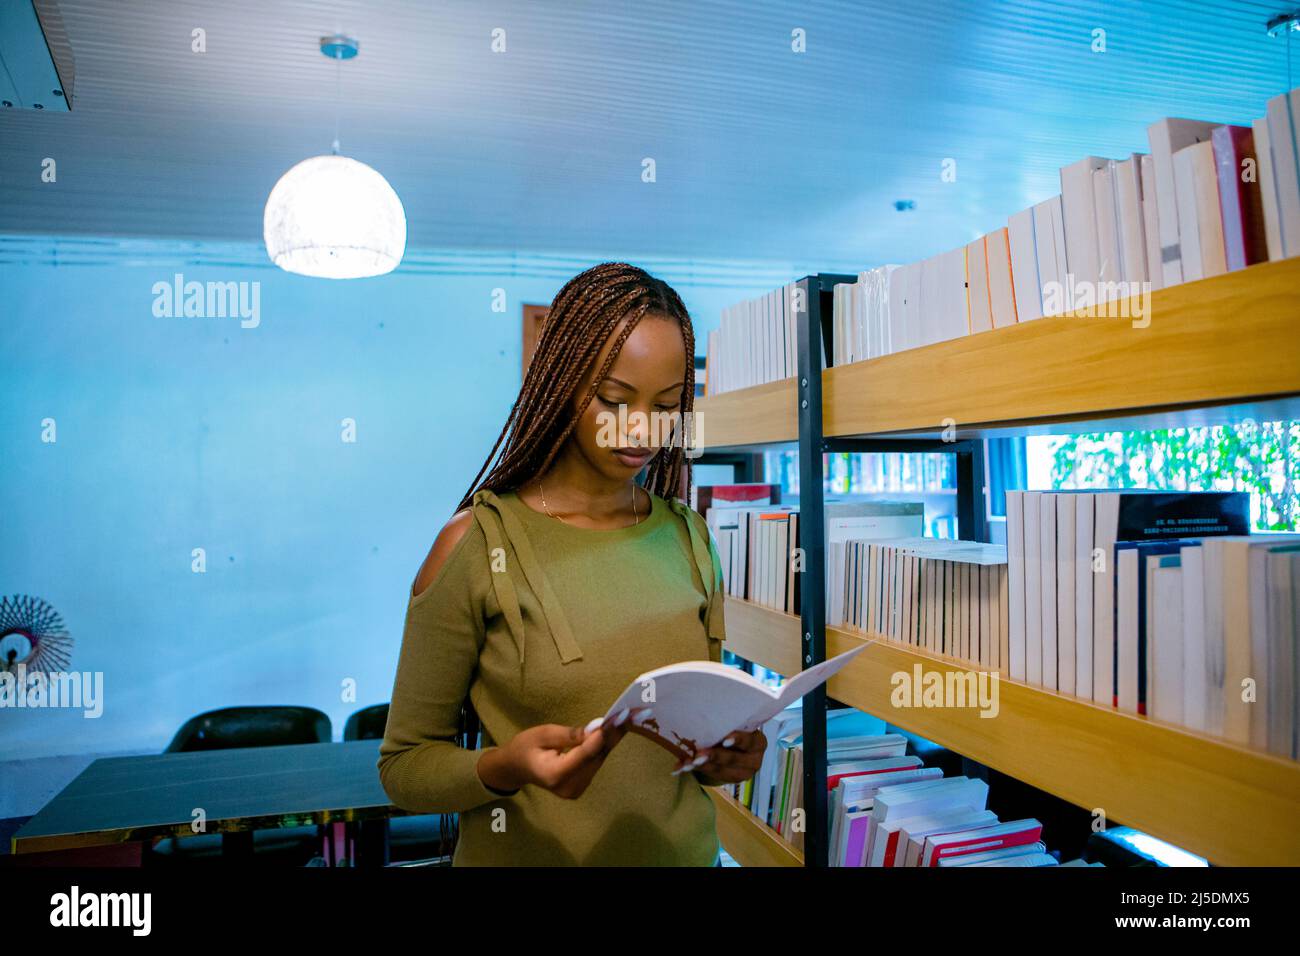 Kigali, Ruanda. 22. April 2022. (220423) -- KIGALI, 23. April 2022 (Xinhua) -- Ein Mädchen liest ein Buch in einer Bibliothek im A-Link Chinese Restaurant in Kigali, Ruanda, 22. April 2022. Die chinesische Gemeinschaft in Ruanda hat am Freitag eine Bibliothek im A-Link Chinese Restaurant in Kimihurura in Kigali, der Hauptstadt Ruandas, ins Leben gerufen. Die Bibliothek, die bisher unter anderem mit mehr als 5.000 Büchern in chinesischer, koreanischer und englischer Sprache ausgestattet wurde, zielt darauf ab, die Lesekultur der ruandischen Bevölkerung zu fördern. Die Themen der Bücher reichen von Literatur, Wissenschaft, Kultur, Technologie, Politik und Geschichte. Stockfoto